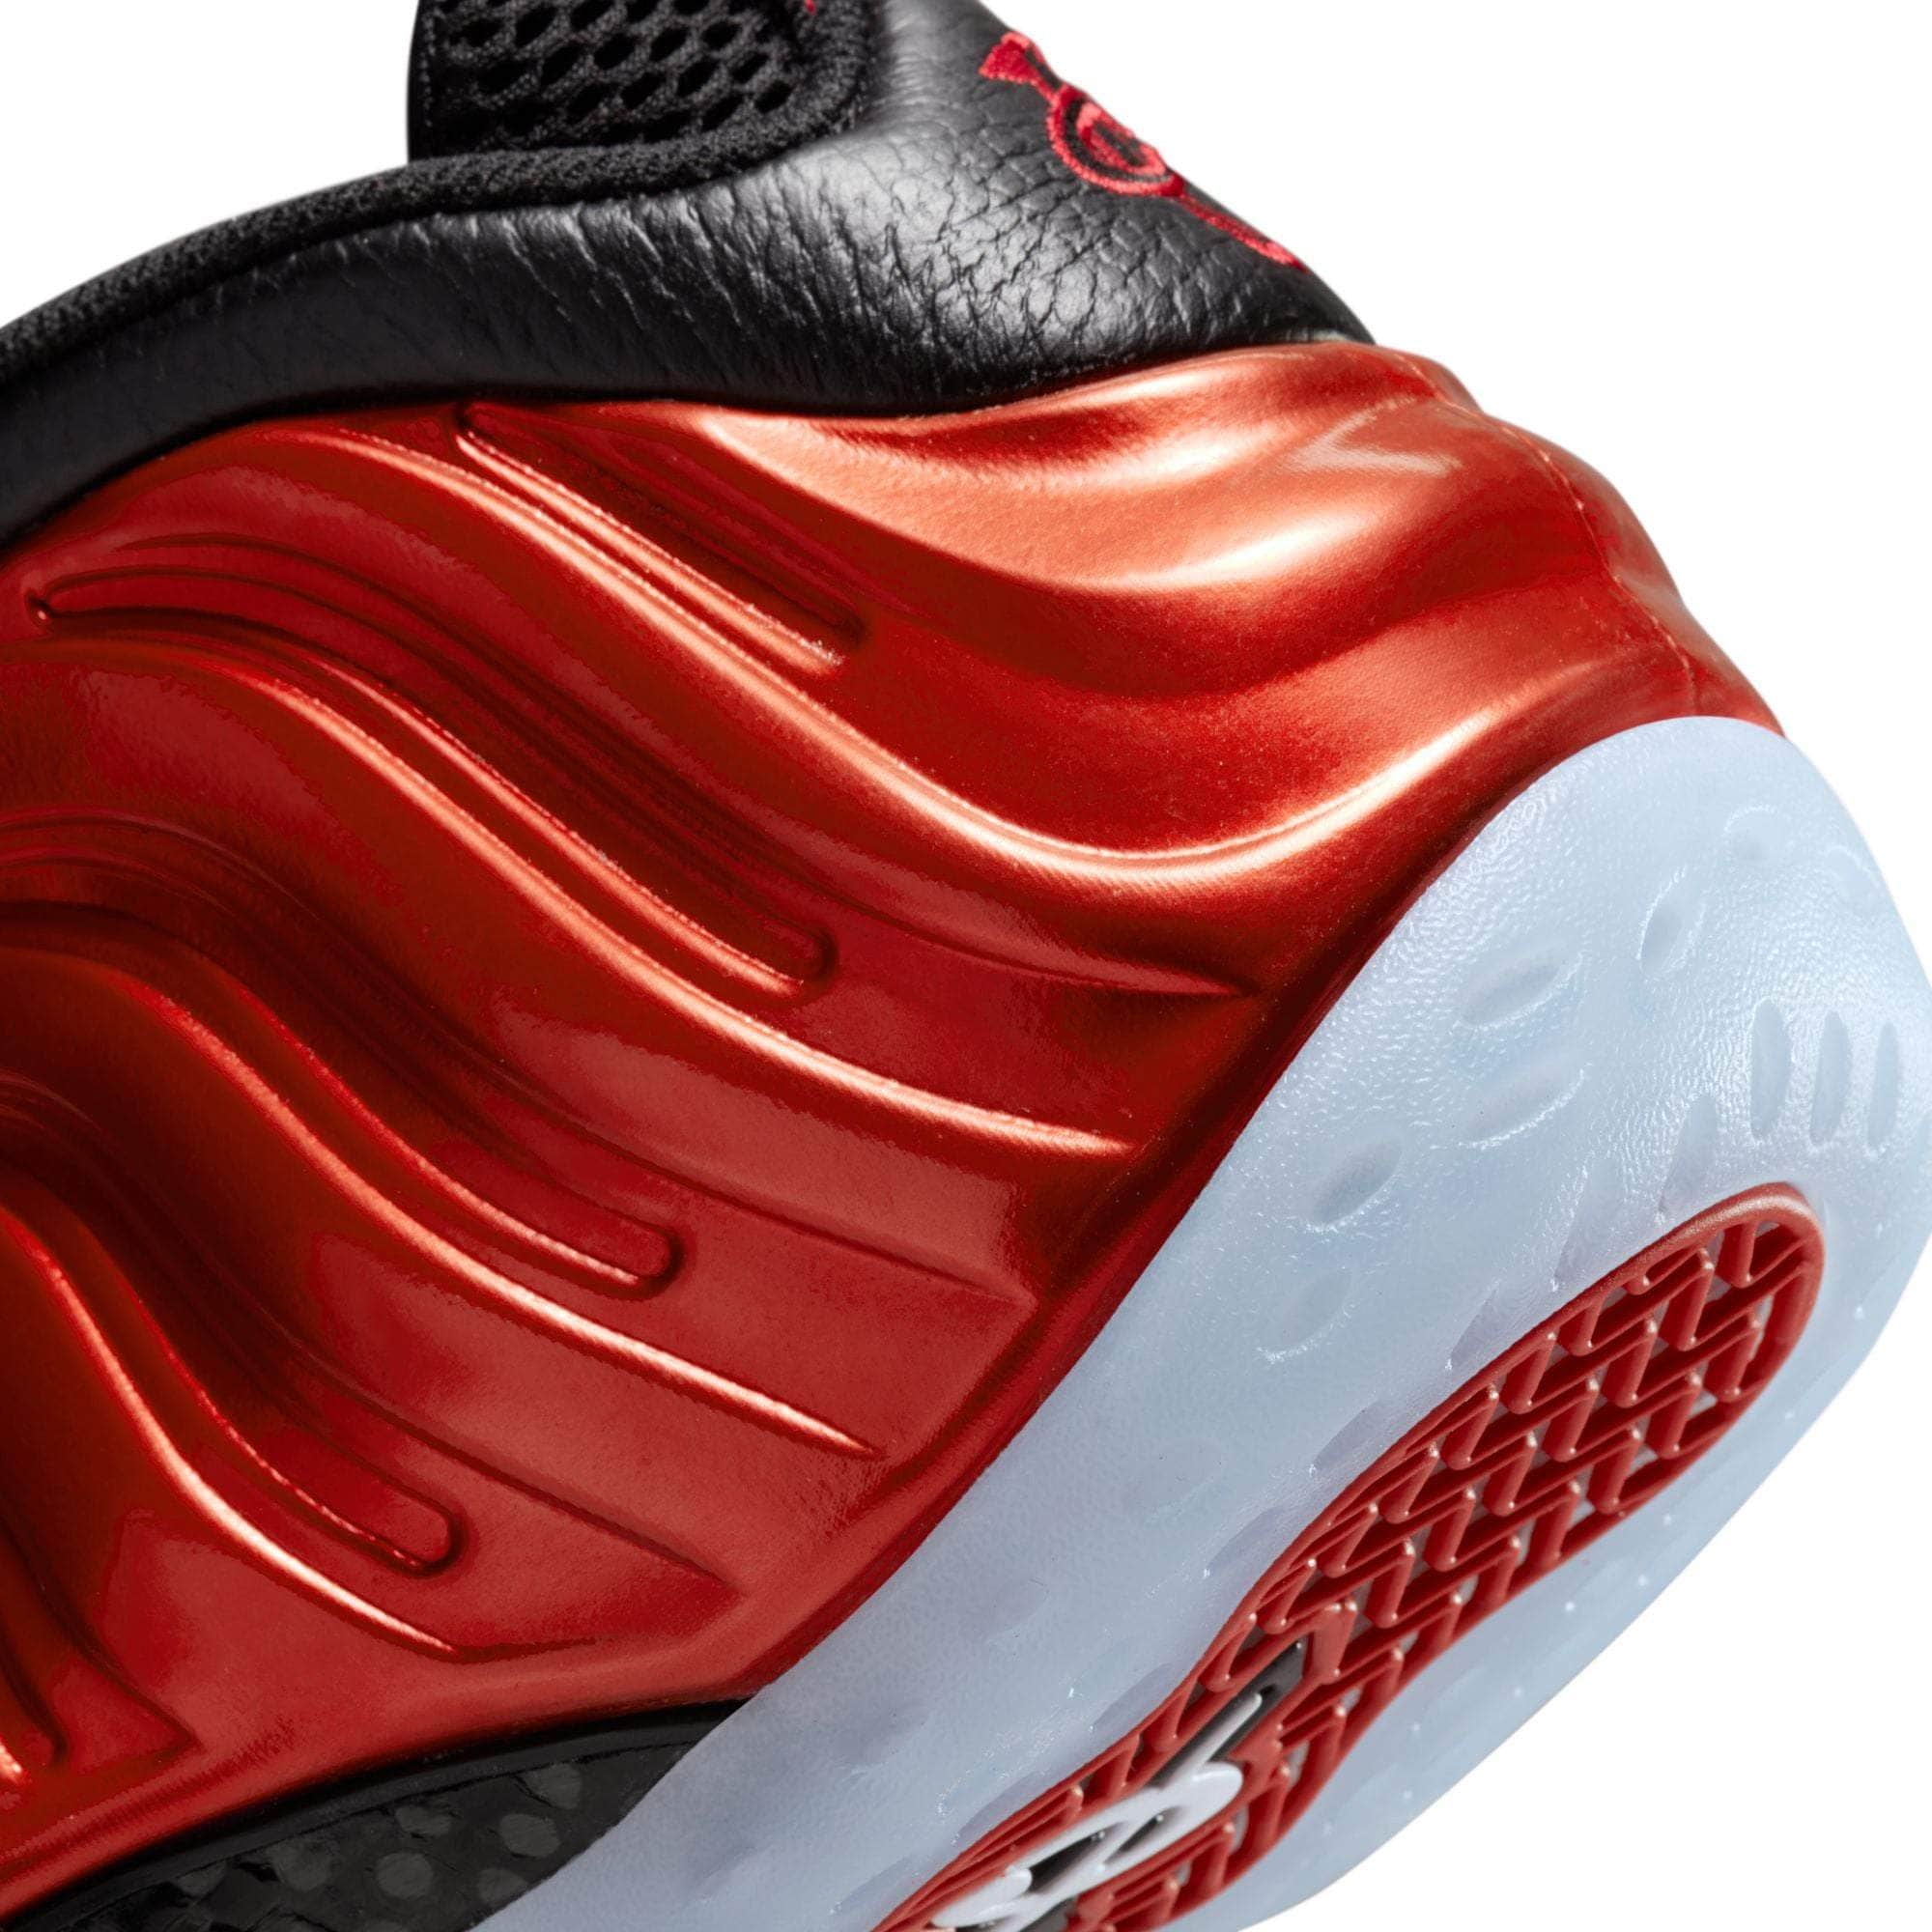 NIKE FOOTWEAR Nike Air Foamposite One "Metallic Red" - Men's